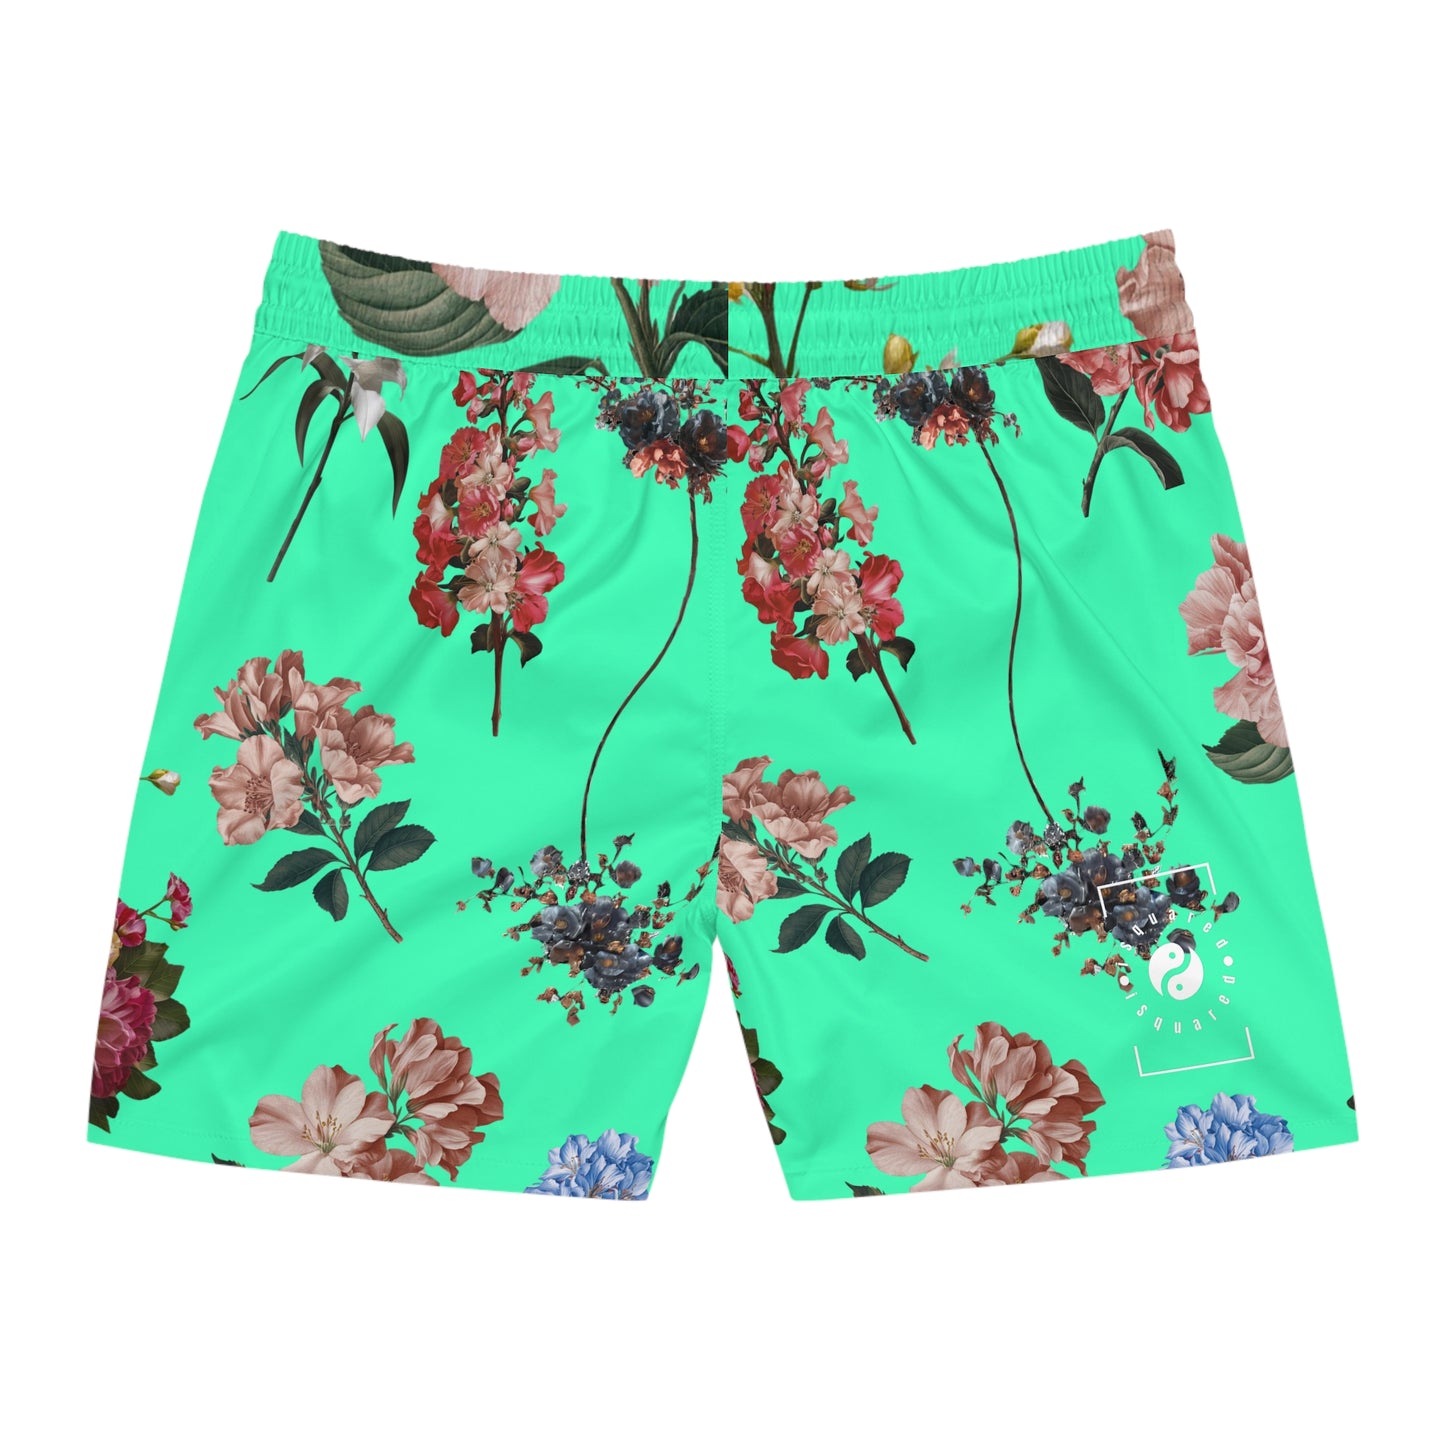 Botanicals on Turquoise - Swim Shorts (Mid-Length) for Men